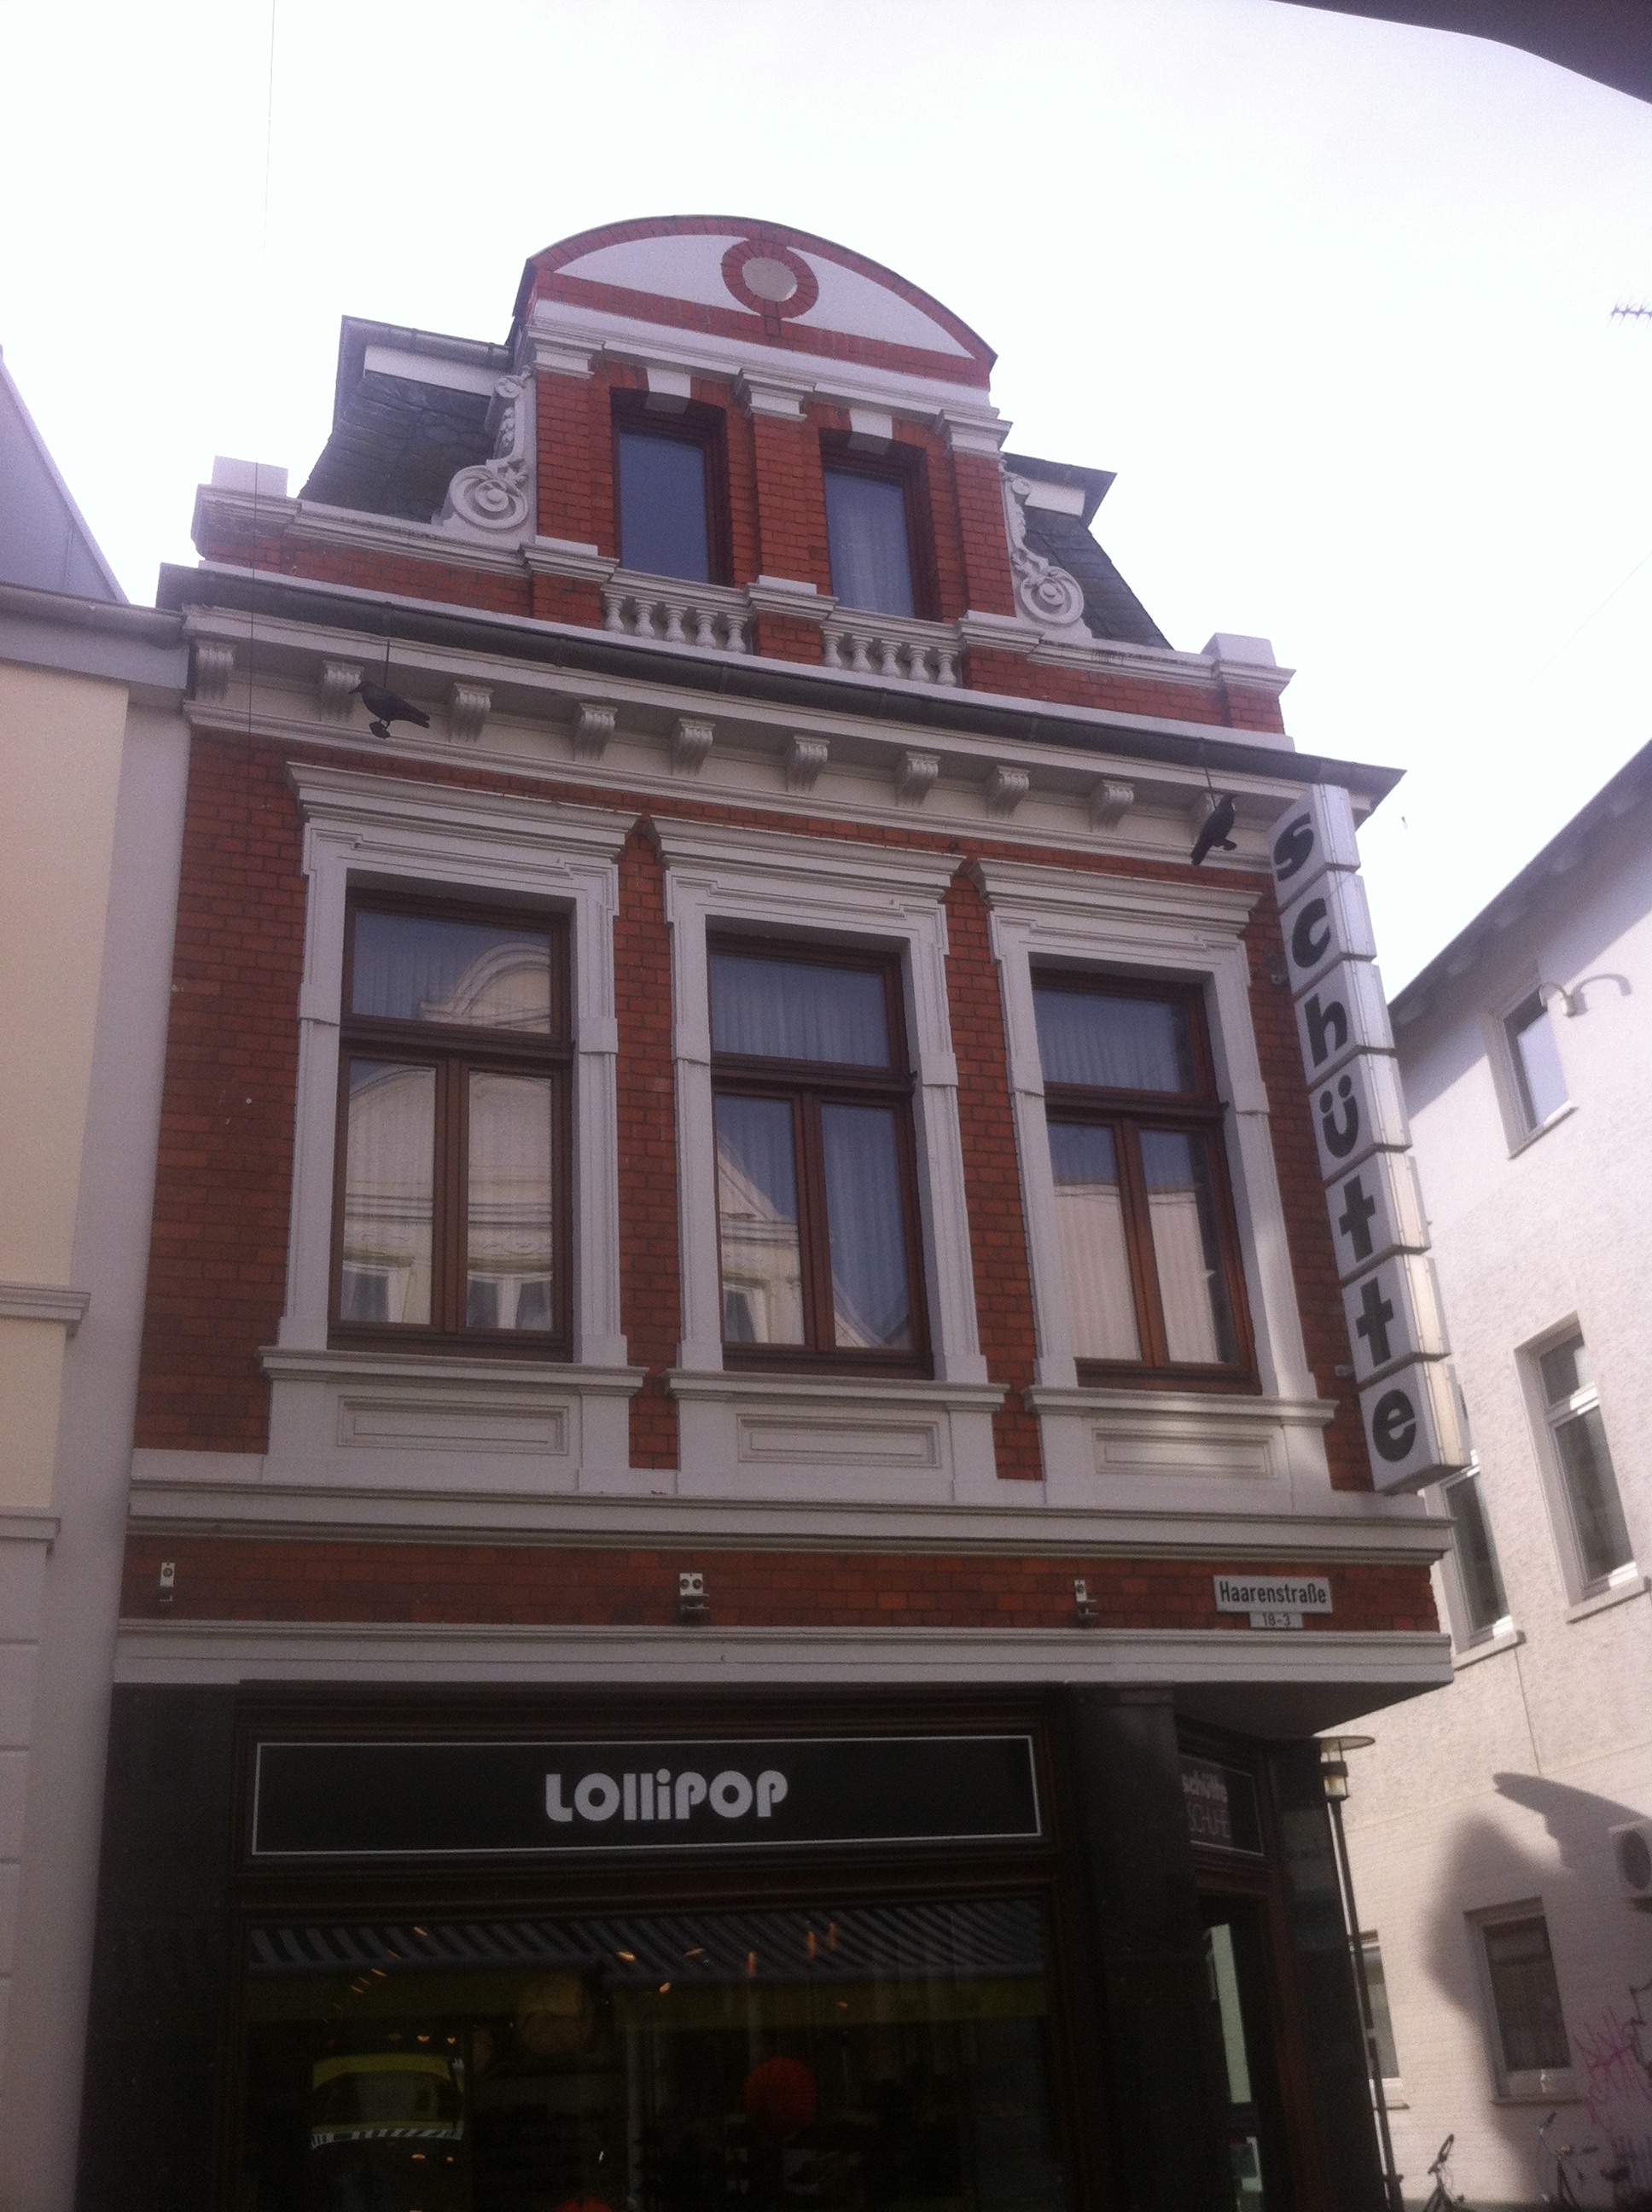 Bild 1 Lollipop in Oldenburg